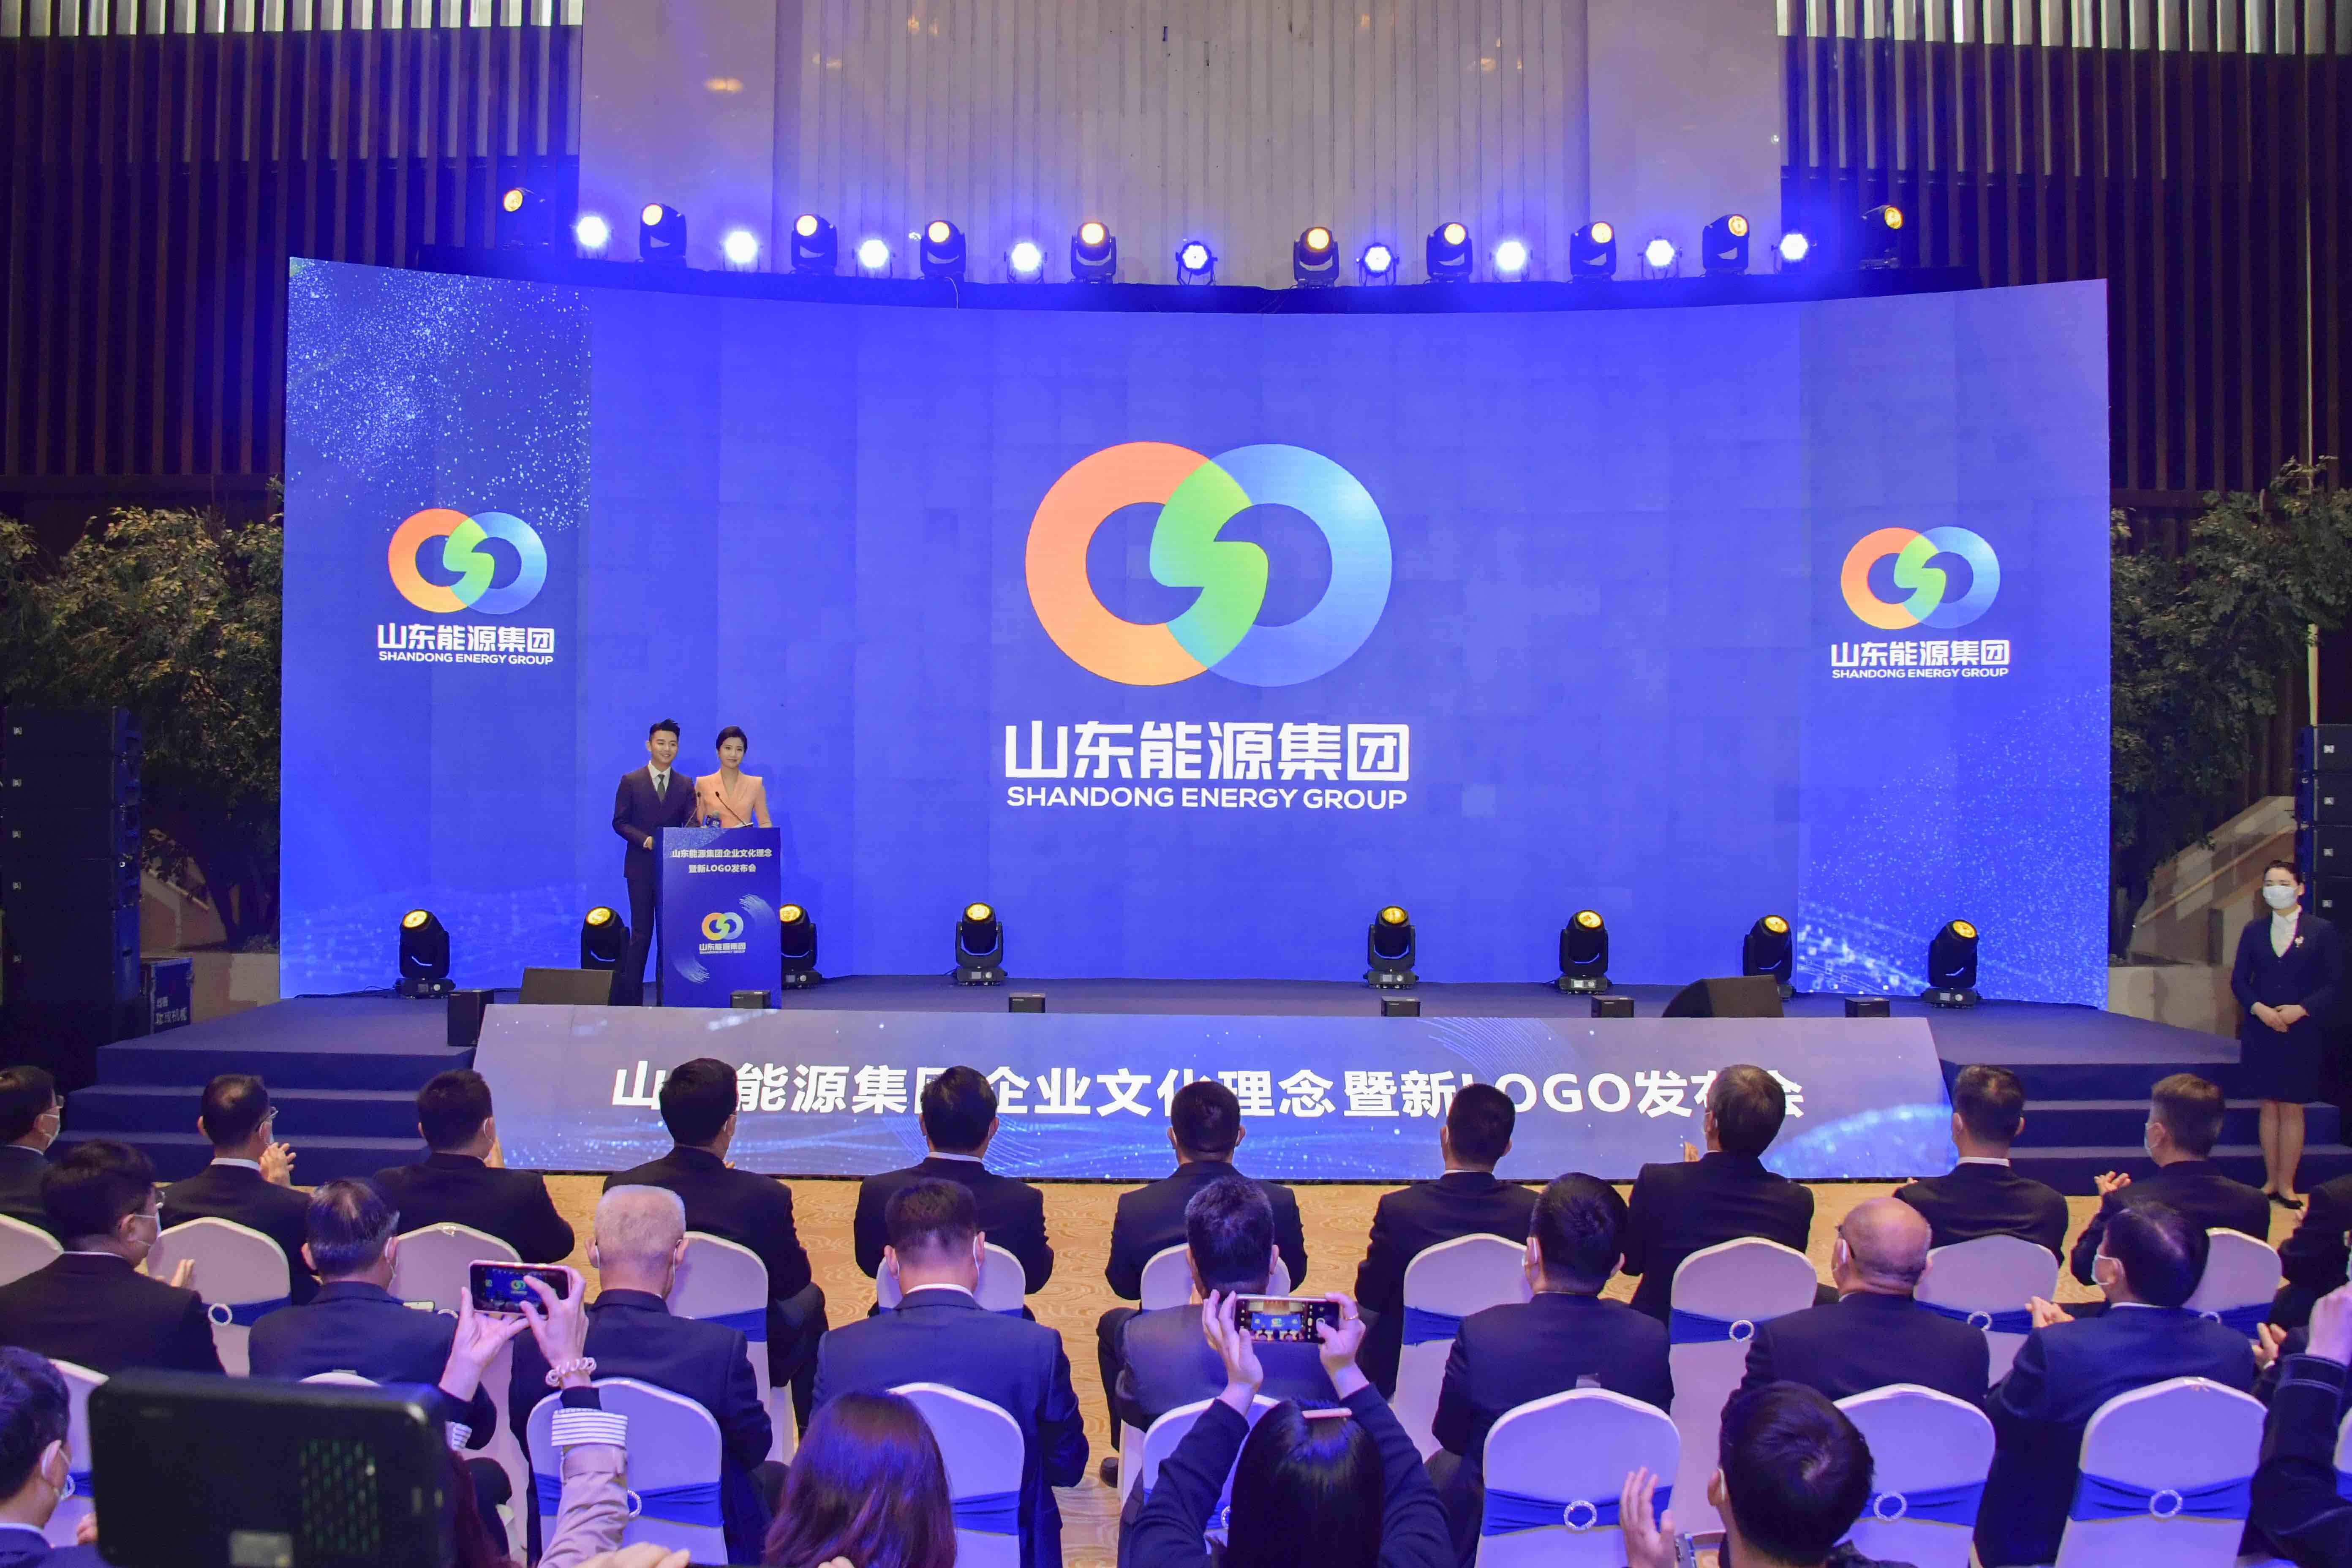 山东能源集团发布企业文化理念和新LOGO